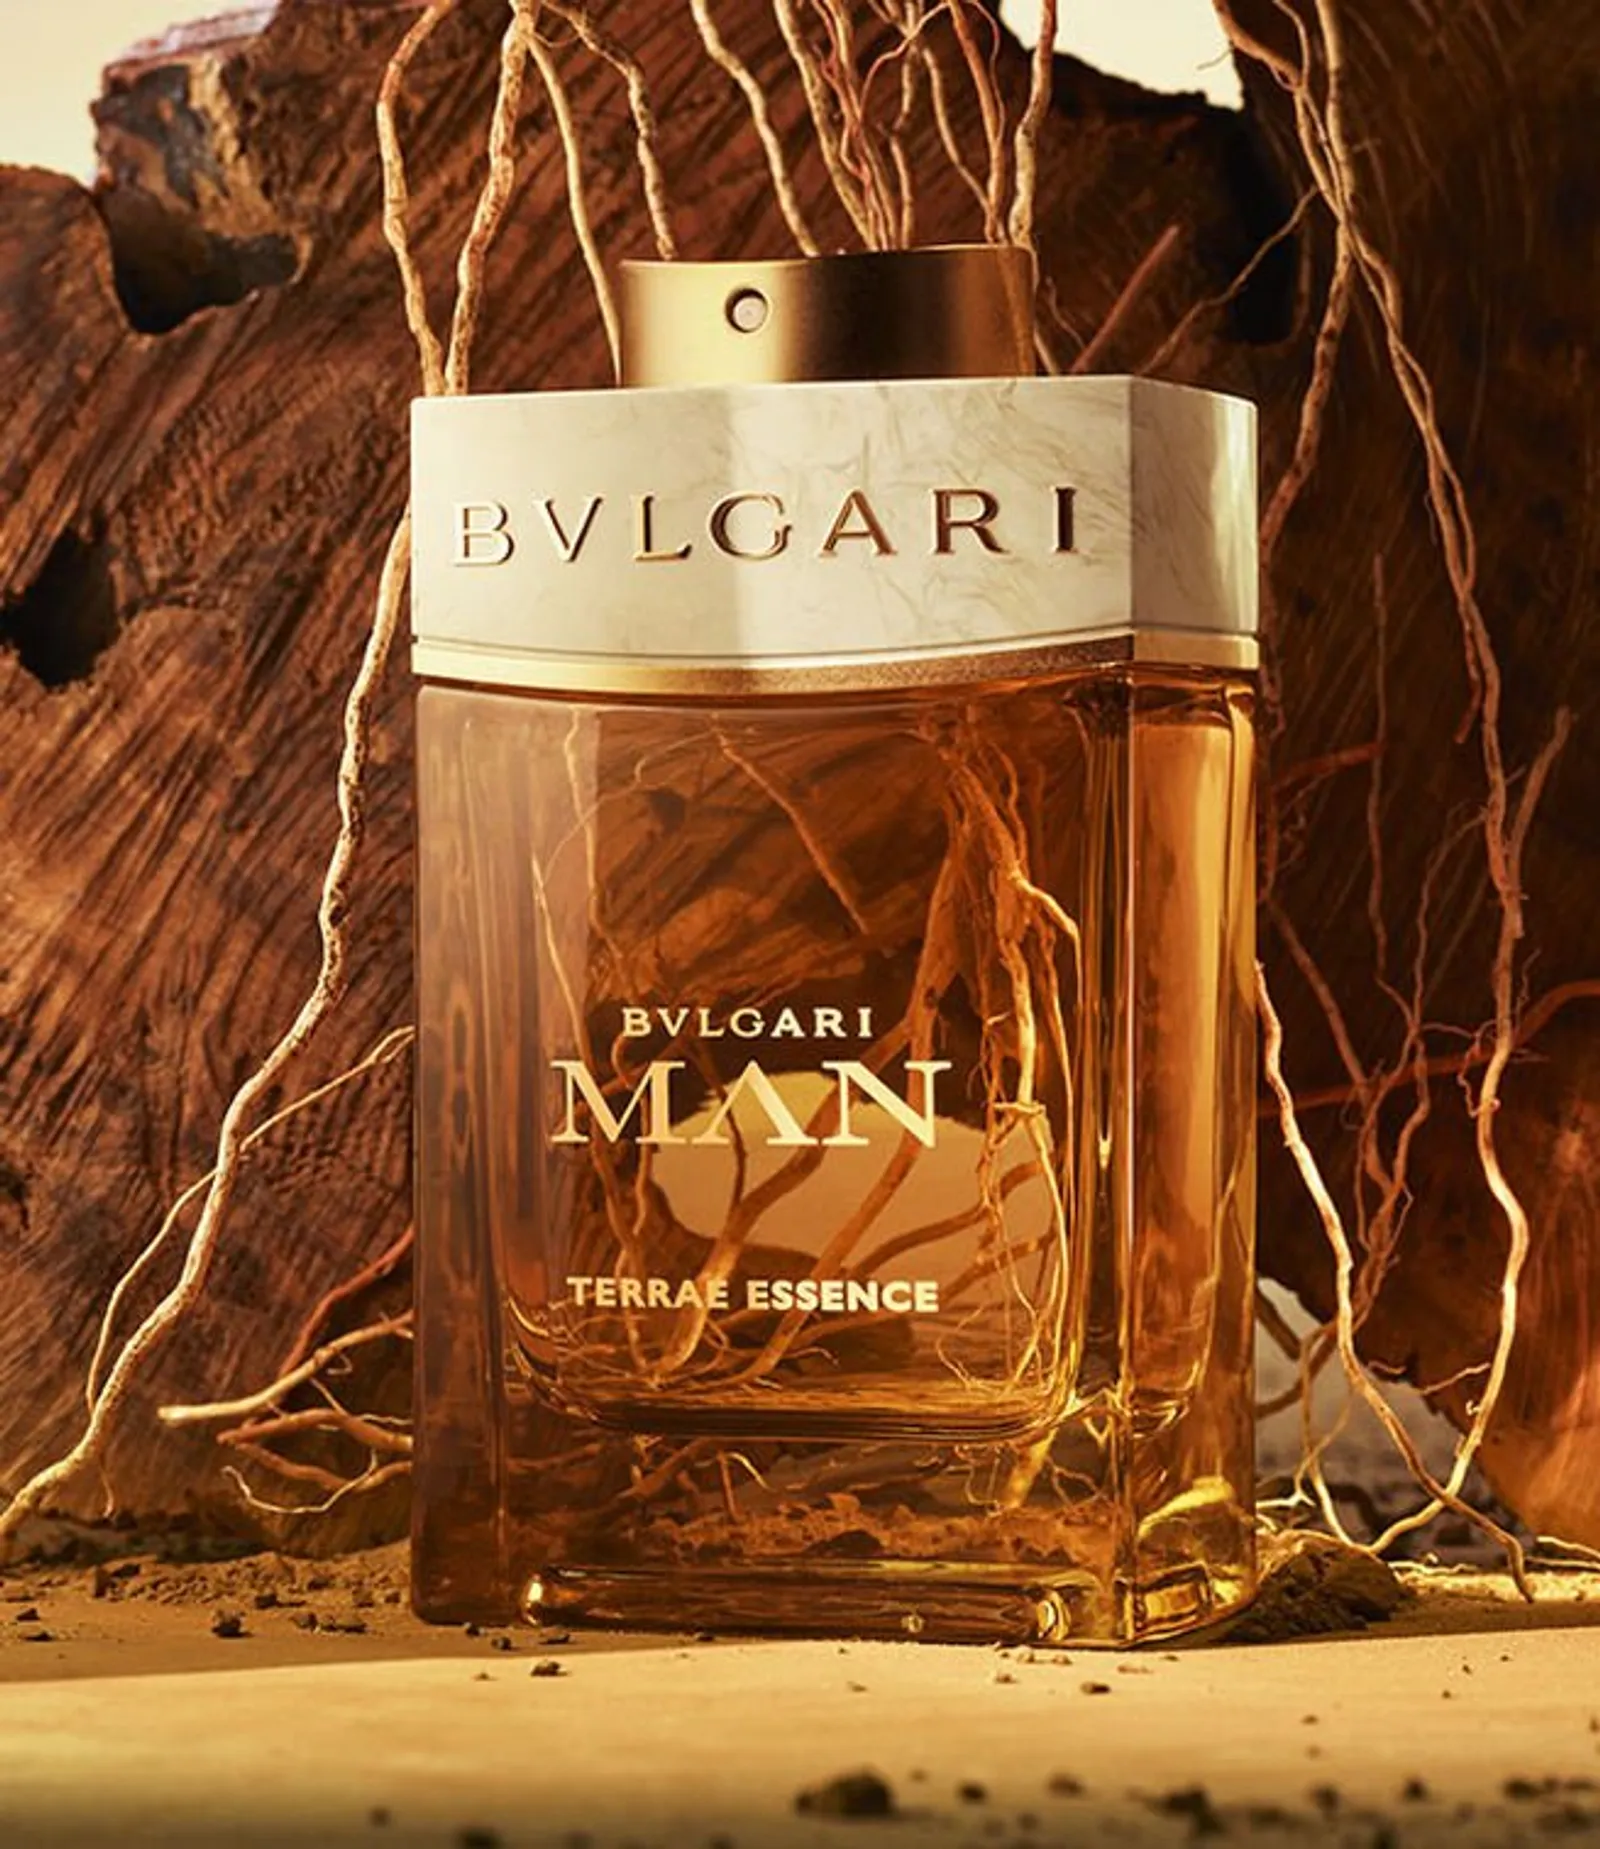 Bvlgari Man Terrae Essence, Parfum Beraroma Tanah yang Mewah